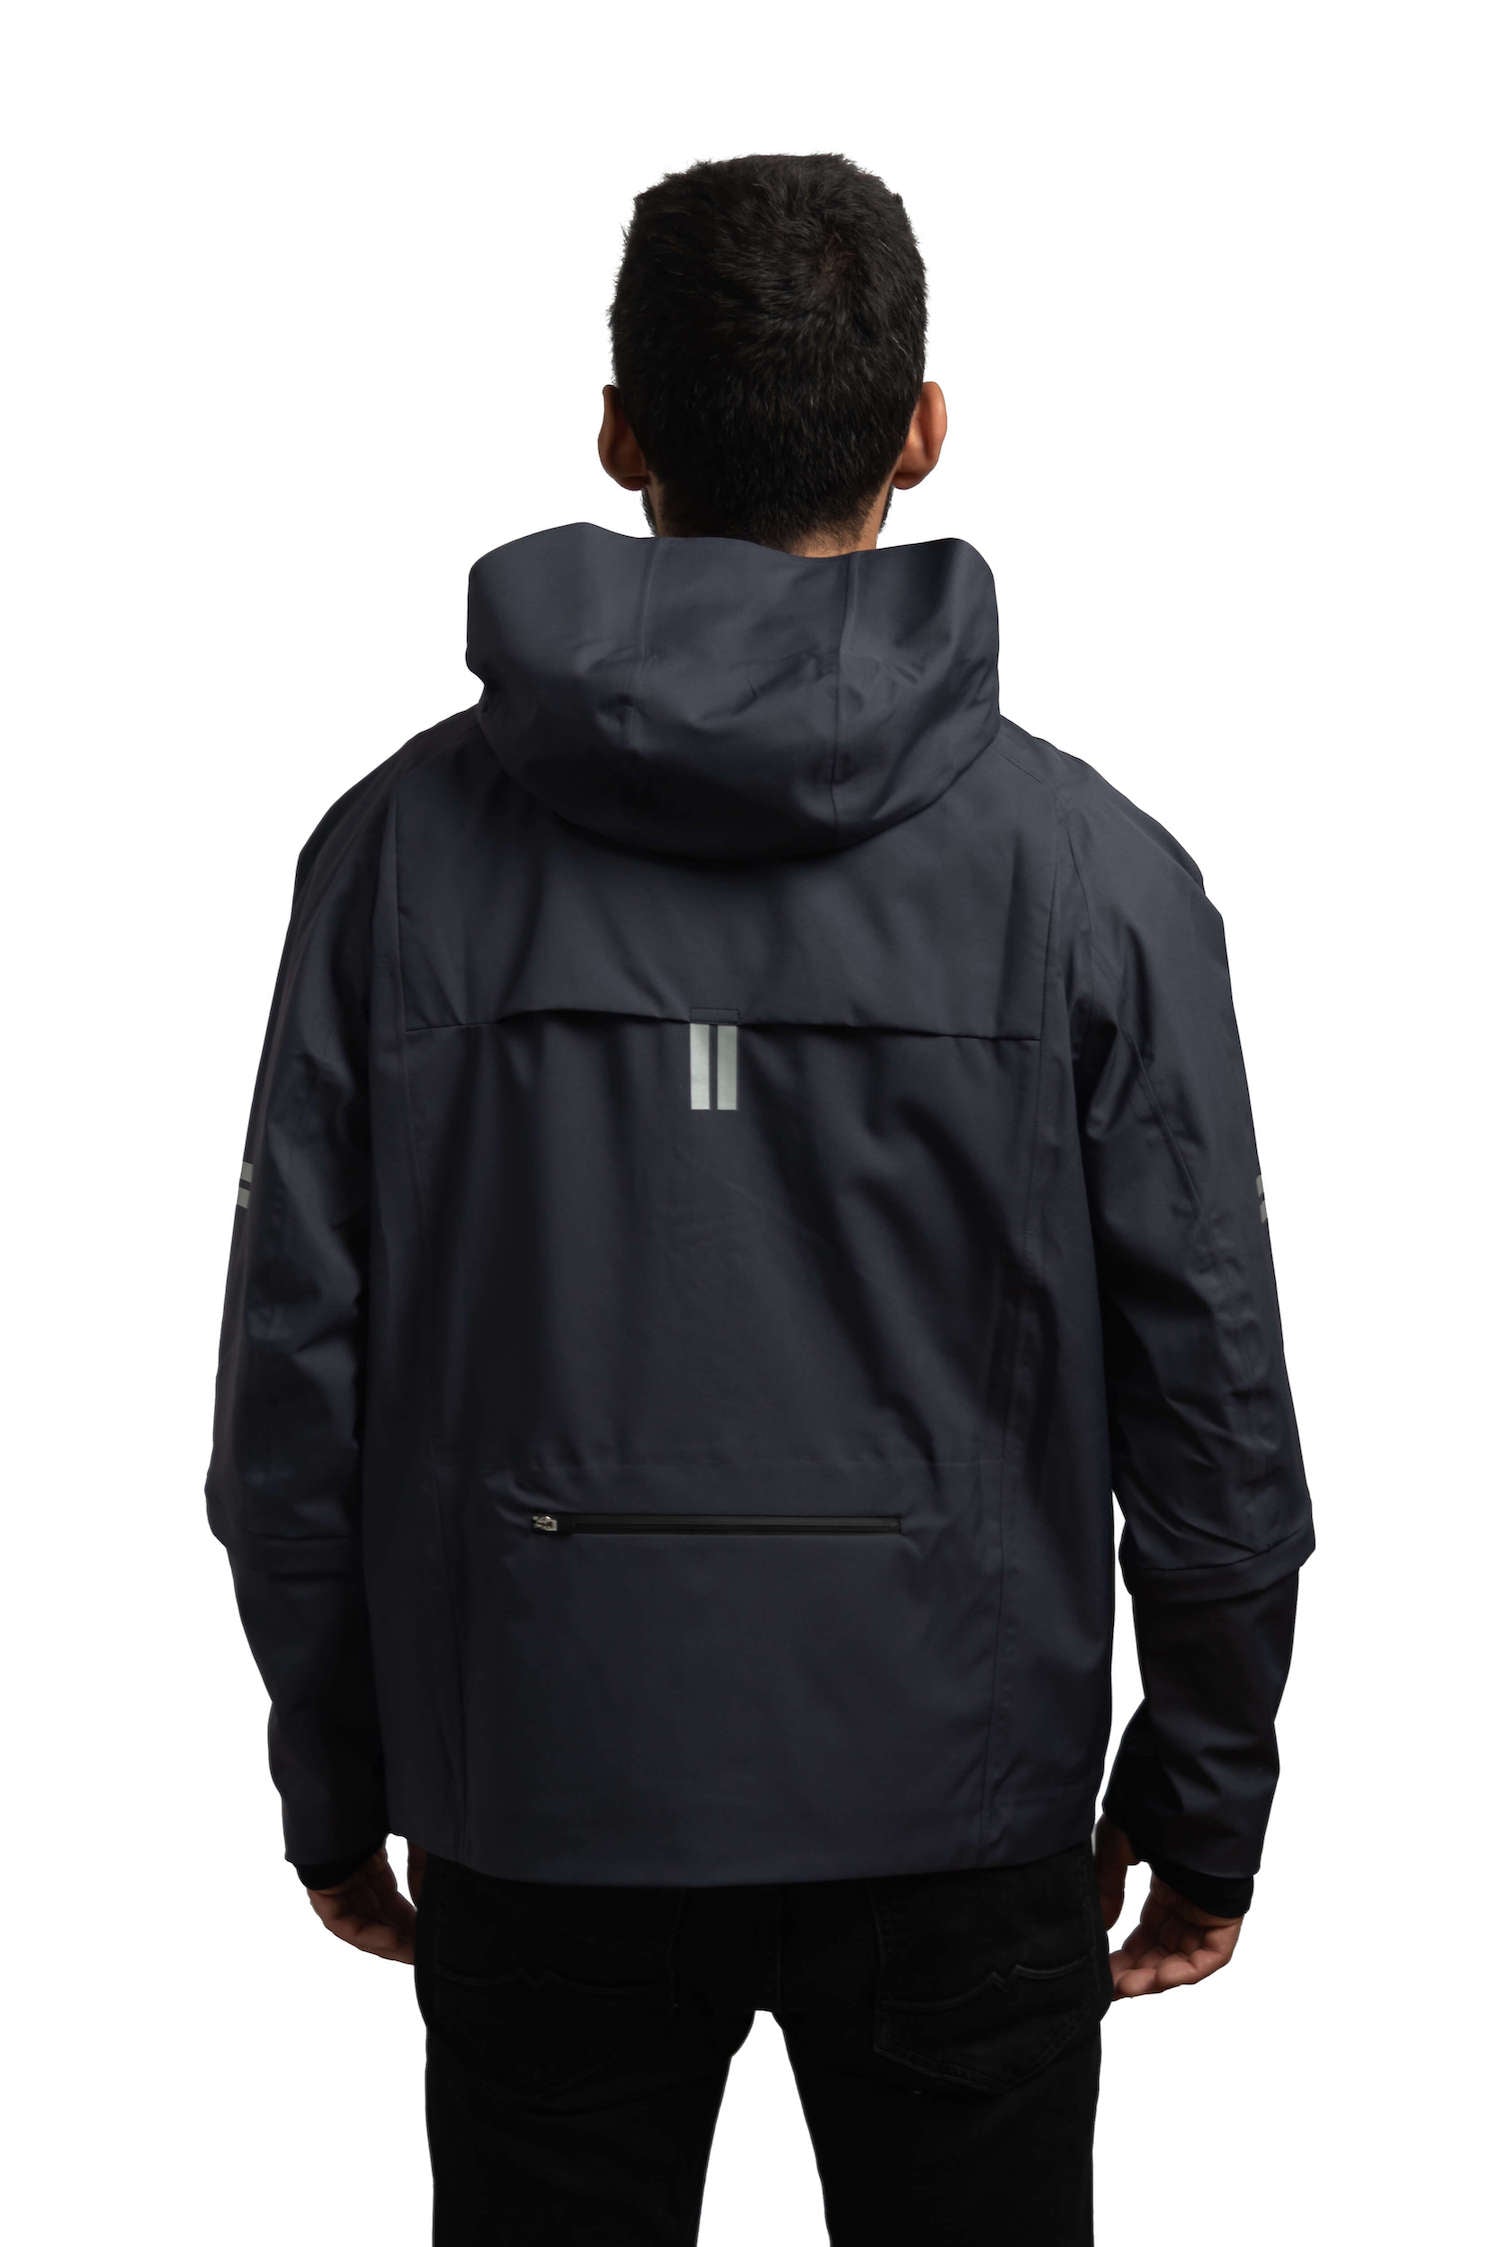 Jacket with Hood in color grey - Sportswear for men and women - Cycling Wear - Rain Coat - Rain Jacket